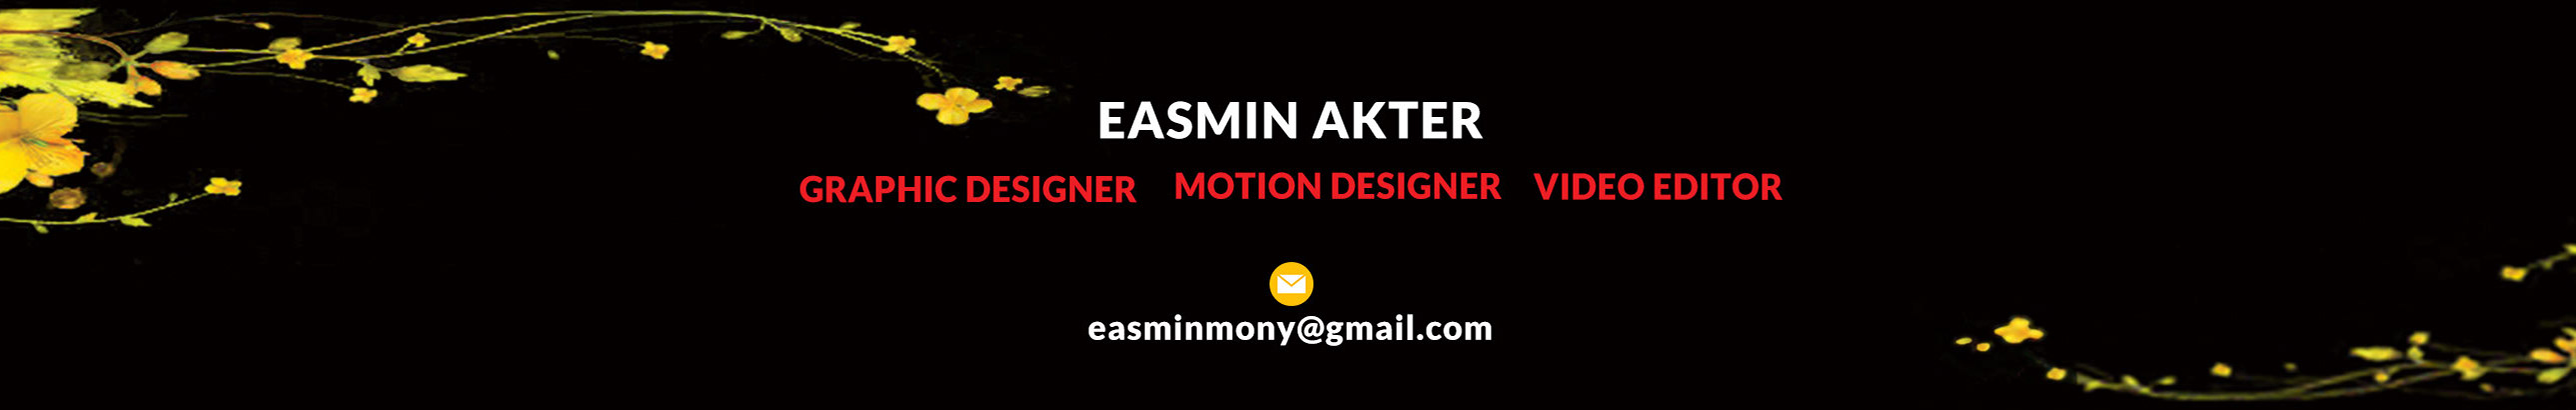 Profil-Banner von EASMIN AKTER